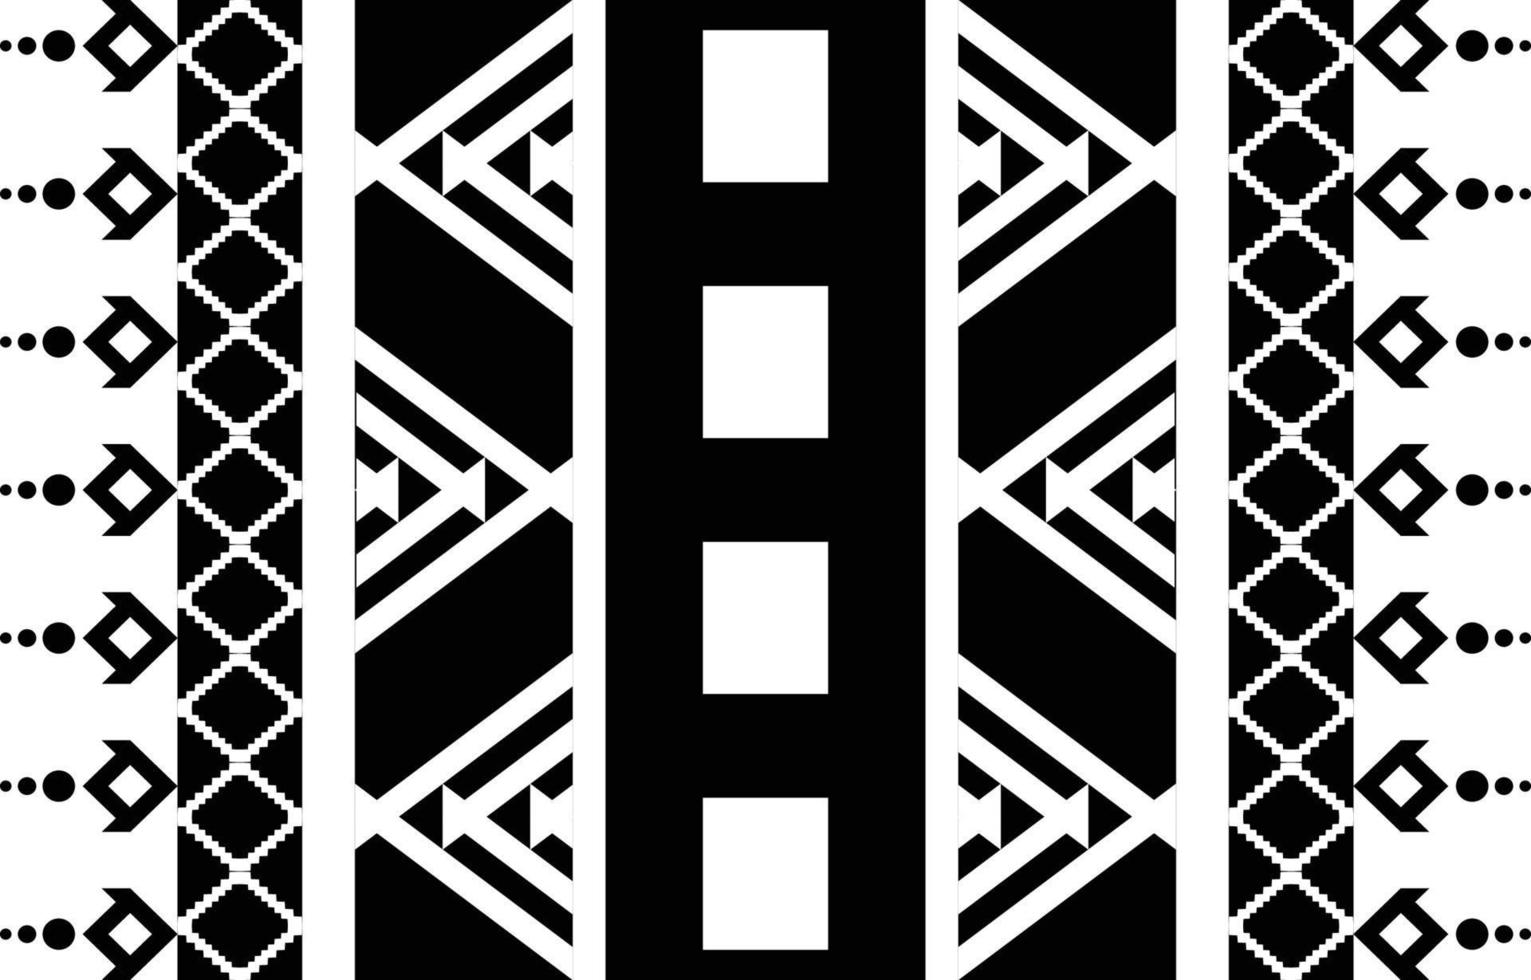 Tribal zwart-wit abstract etnisch geometrisch patroonontwerp voor achtergrond of wallpaper.vector illustratie om stofpatronen, vloerkleden, overhemden, kostuums, tulband, hoeden, gordijnen af te drukken. vector